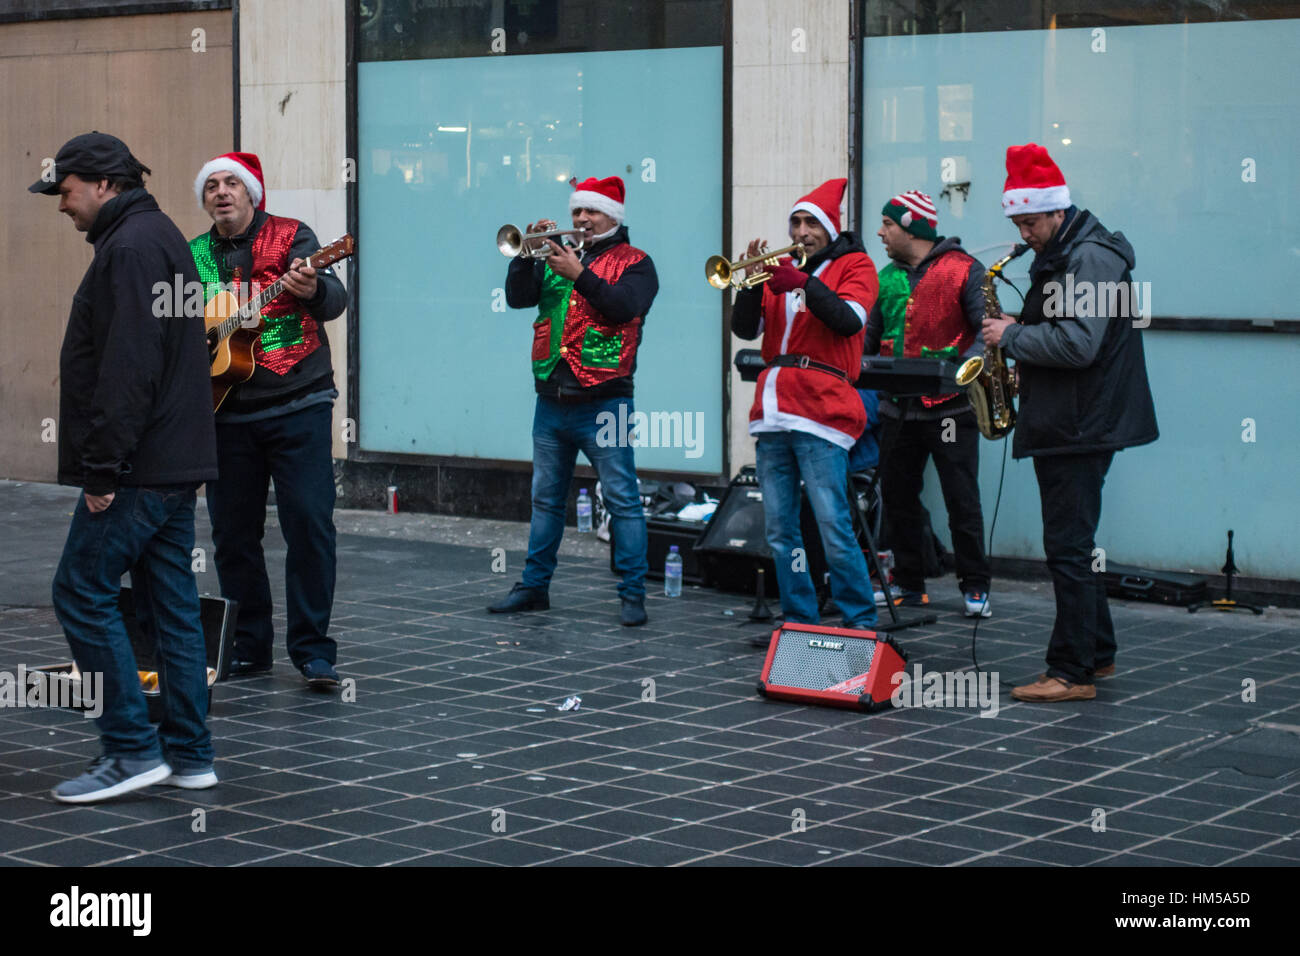 Les musiciens dans la rue habillé pour la saison de Noël Banque D'Images